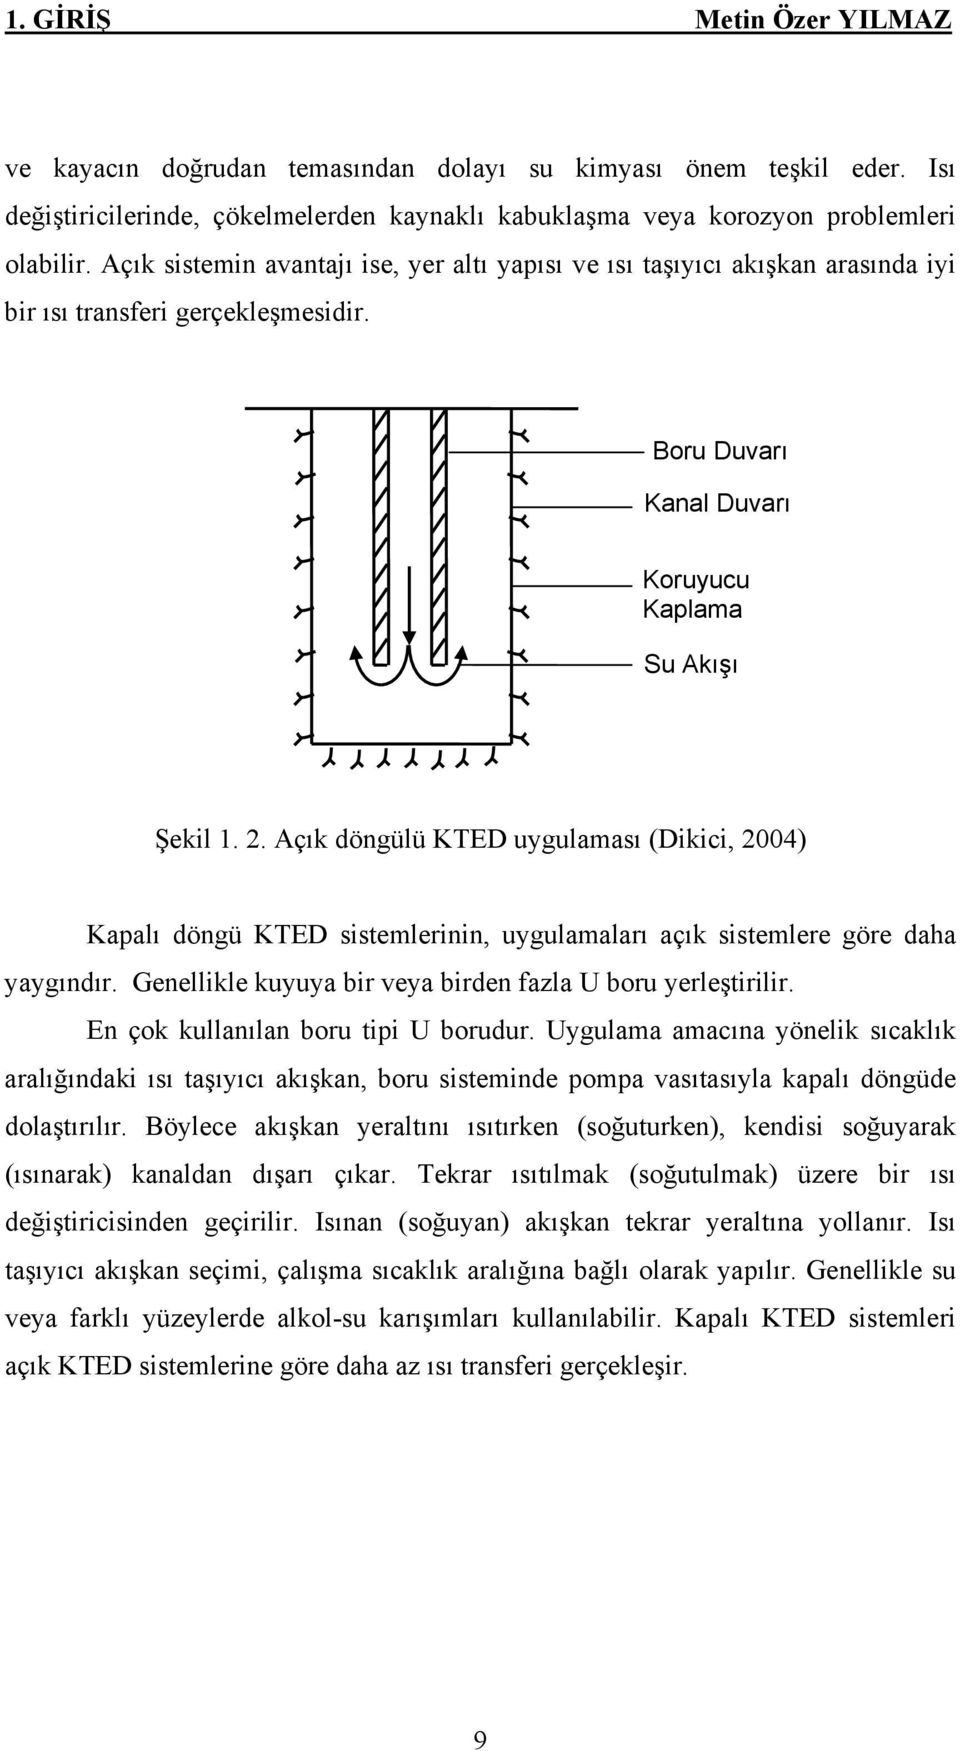 Açık döngülü KTED uygulaması (Dikici, 2004) Kapalı döngü KTED sistemlerinin, uygulamaları açık sistemlere göre daha yaygındır. Genellikle kuyuya bir veya birden fazla U boru yerleştirilir.